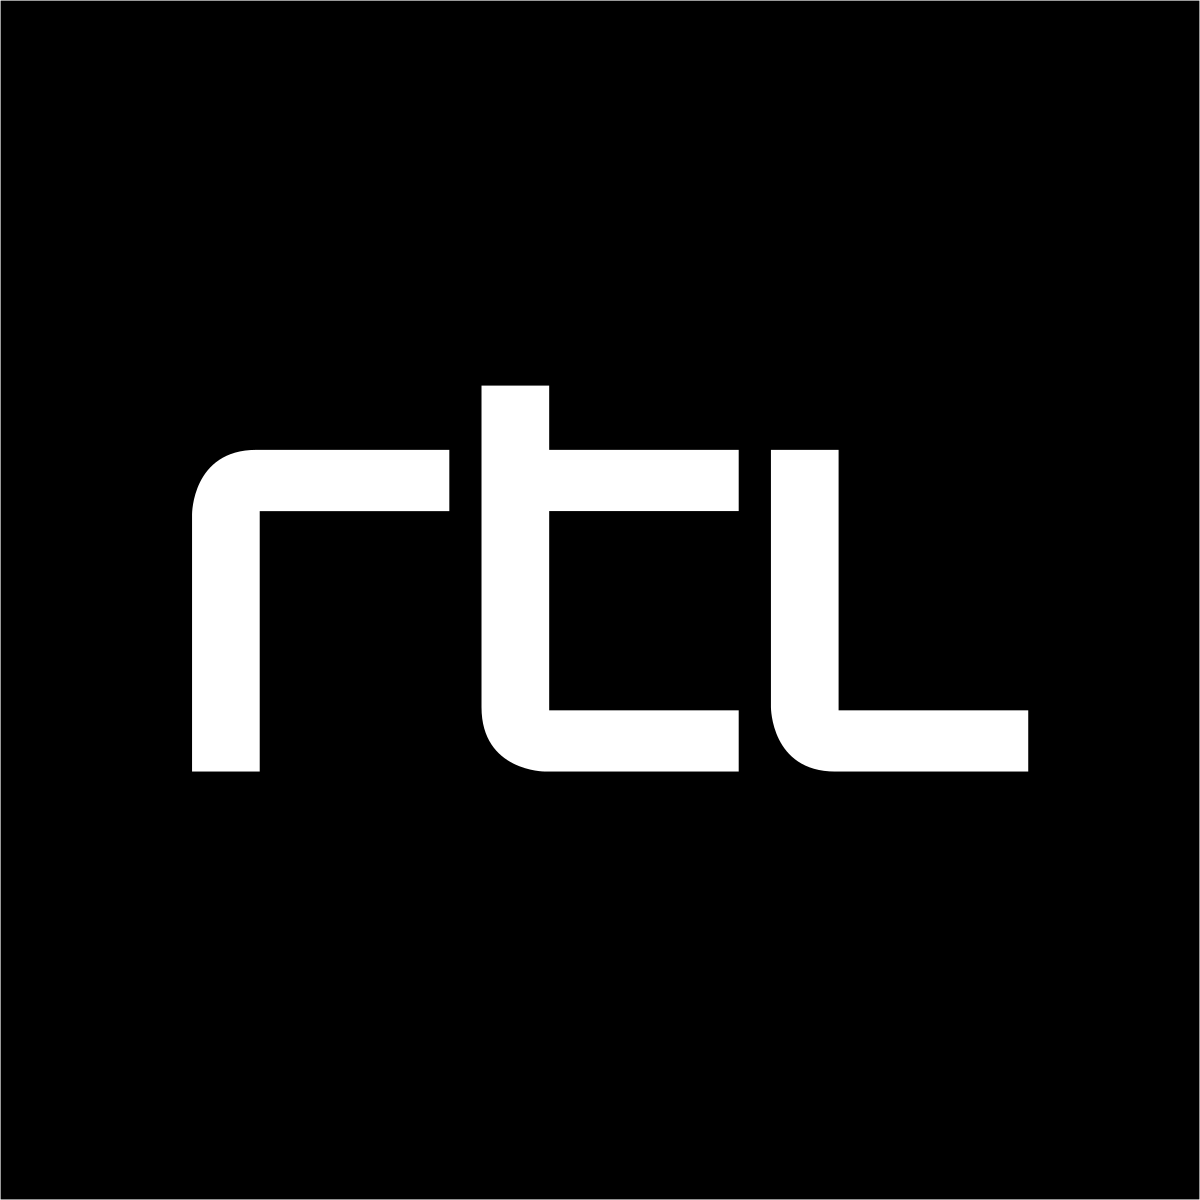 Op welke zender zal Big Brother verschijnen, RTL 4 of 5?